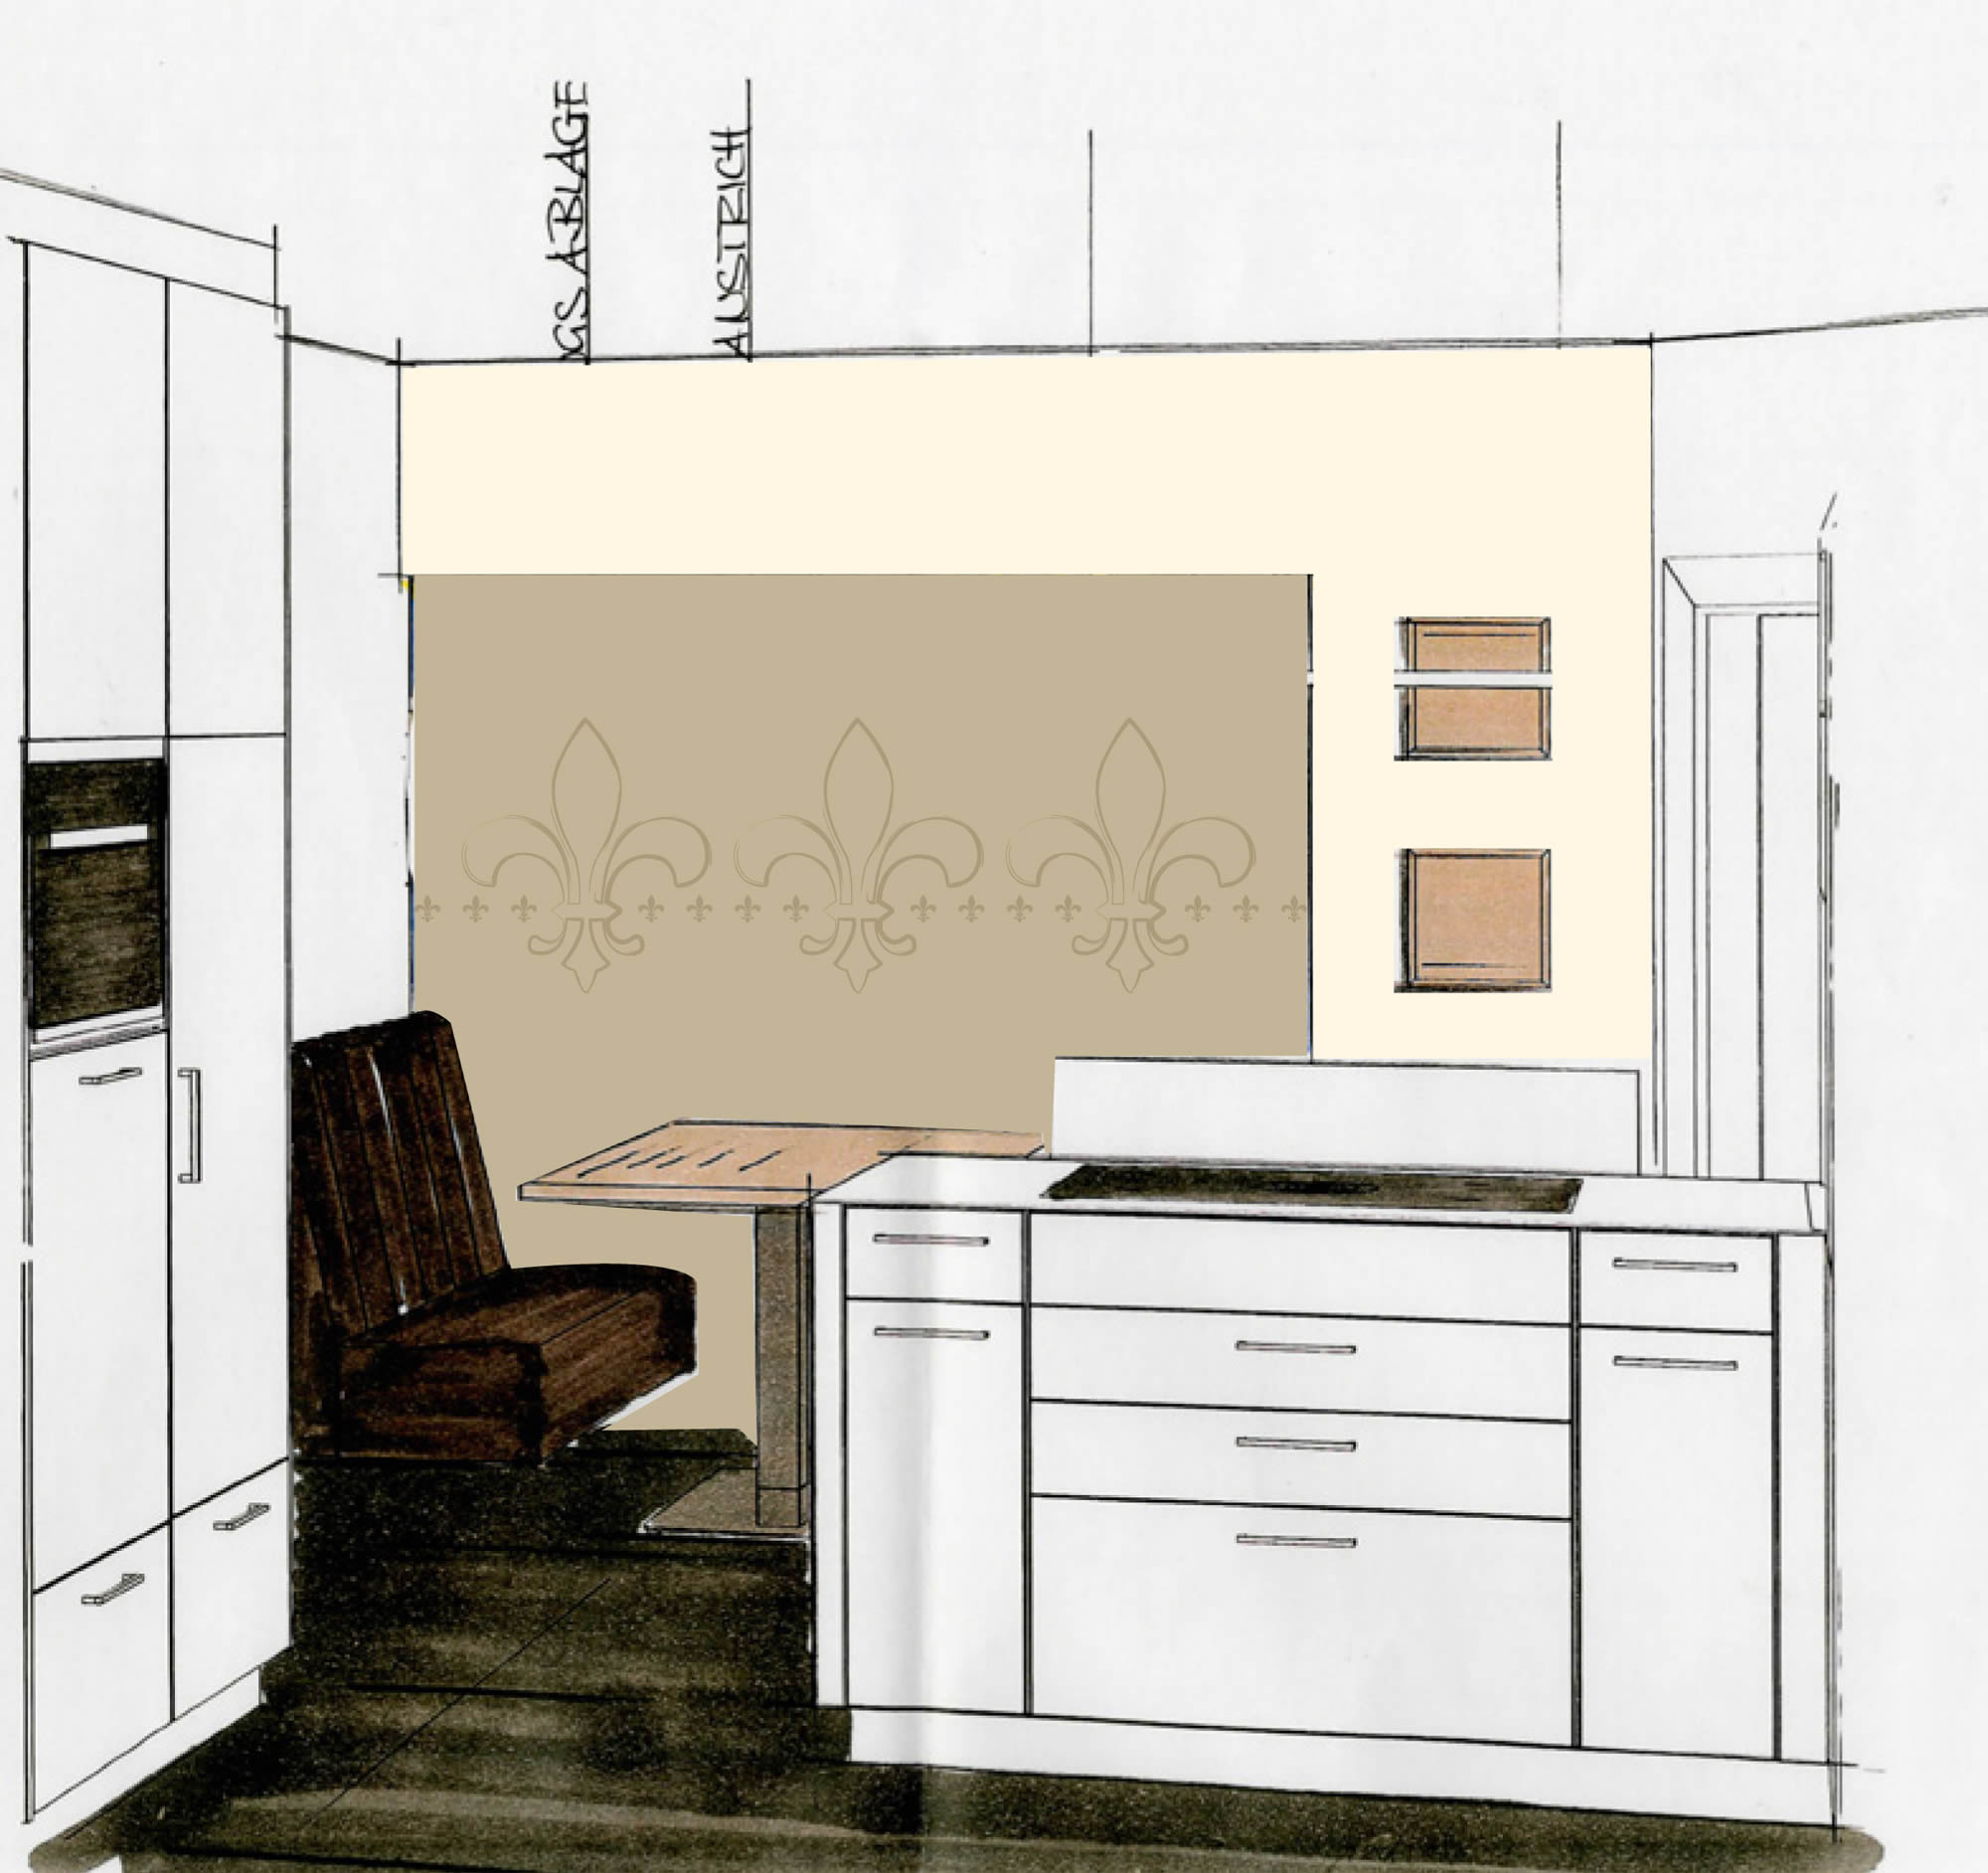 Individuelle Fototapete Lilien Küche Entwurf Zeichnung Vorschlag